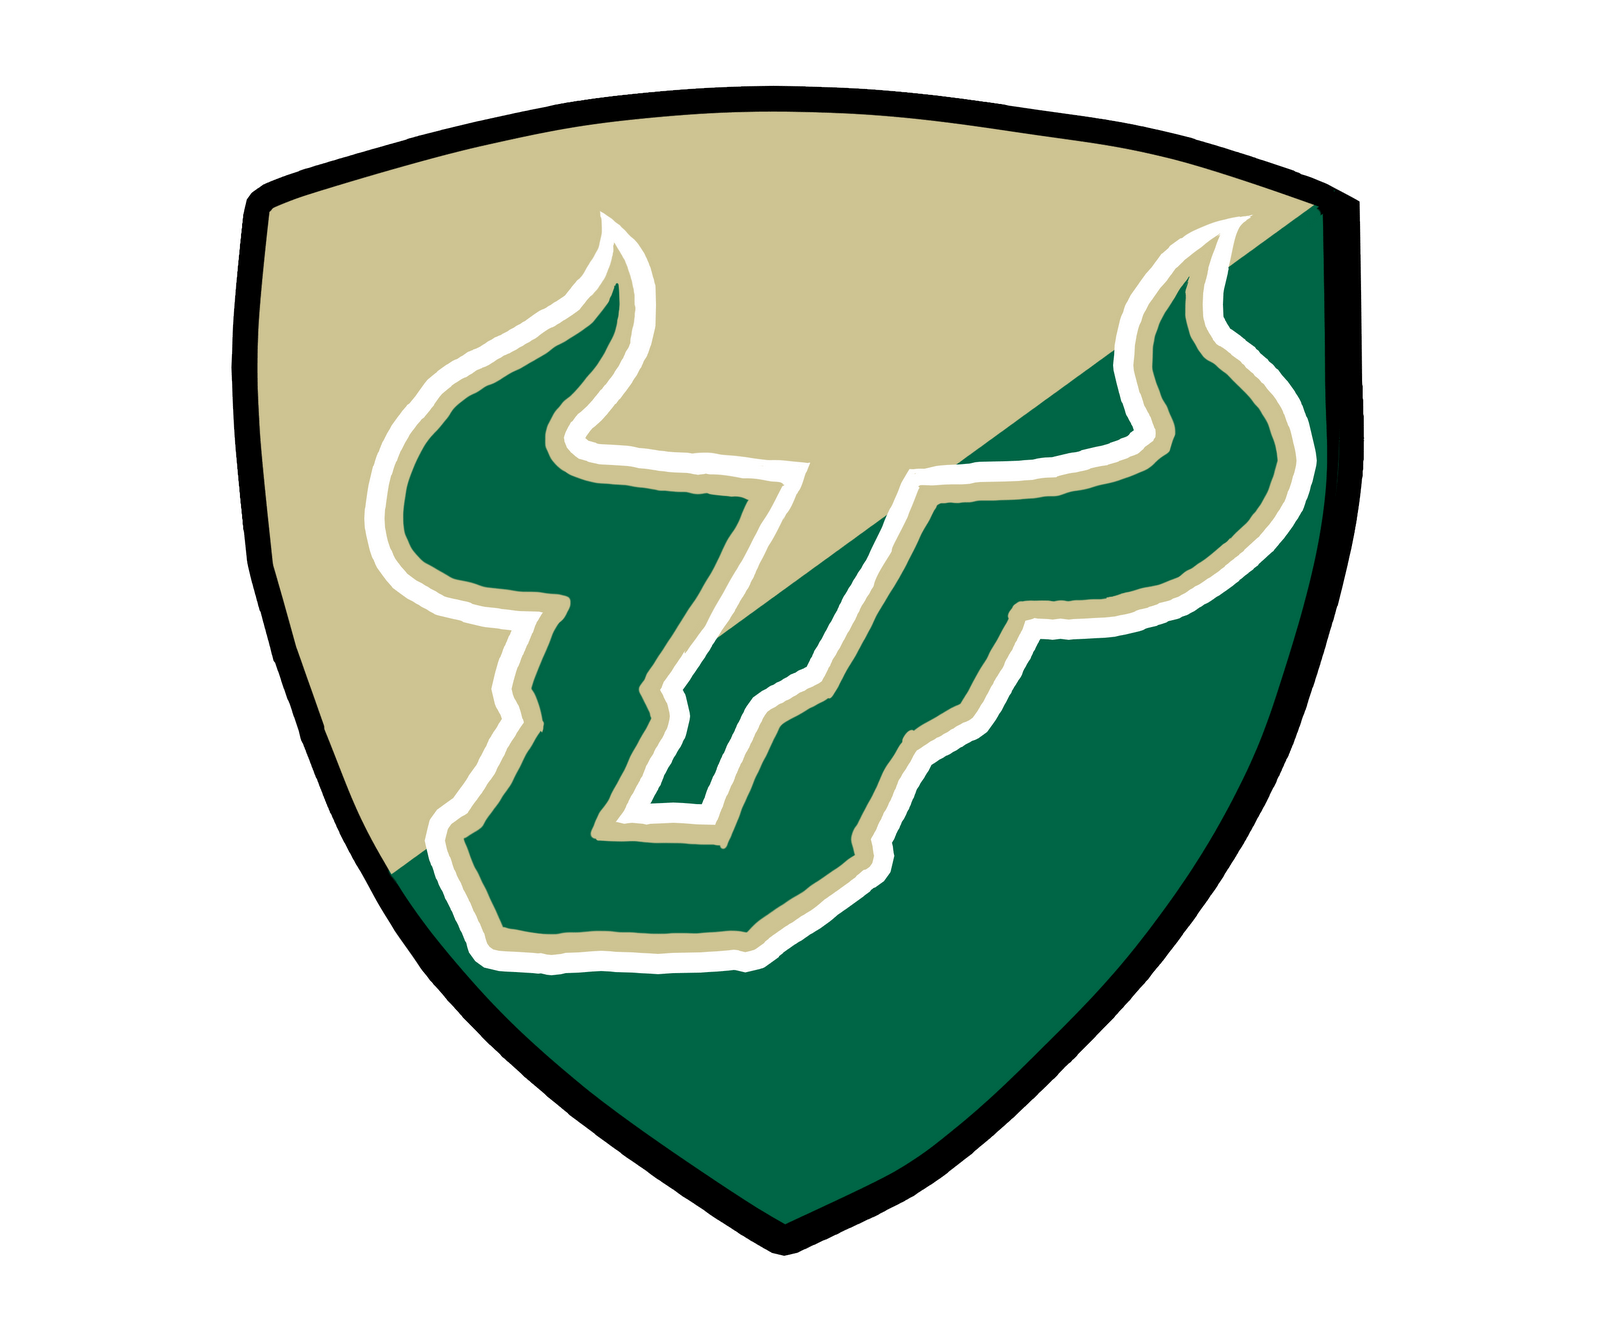 USF Logo - Usf bulls Logos